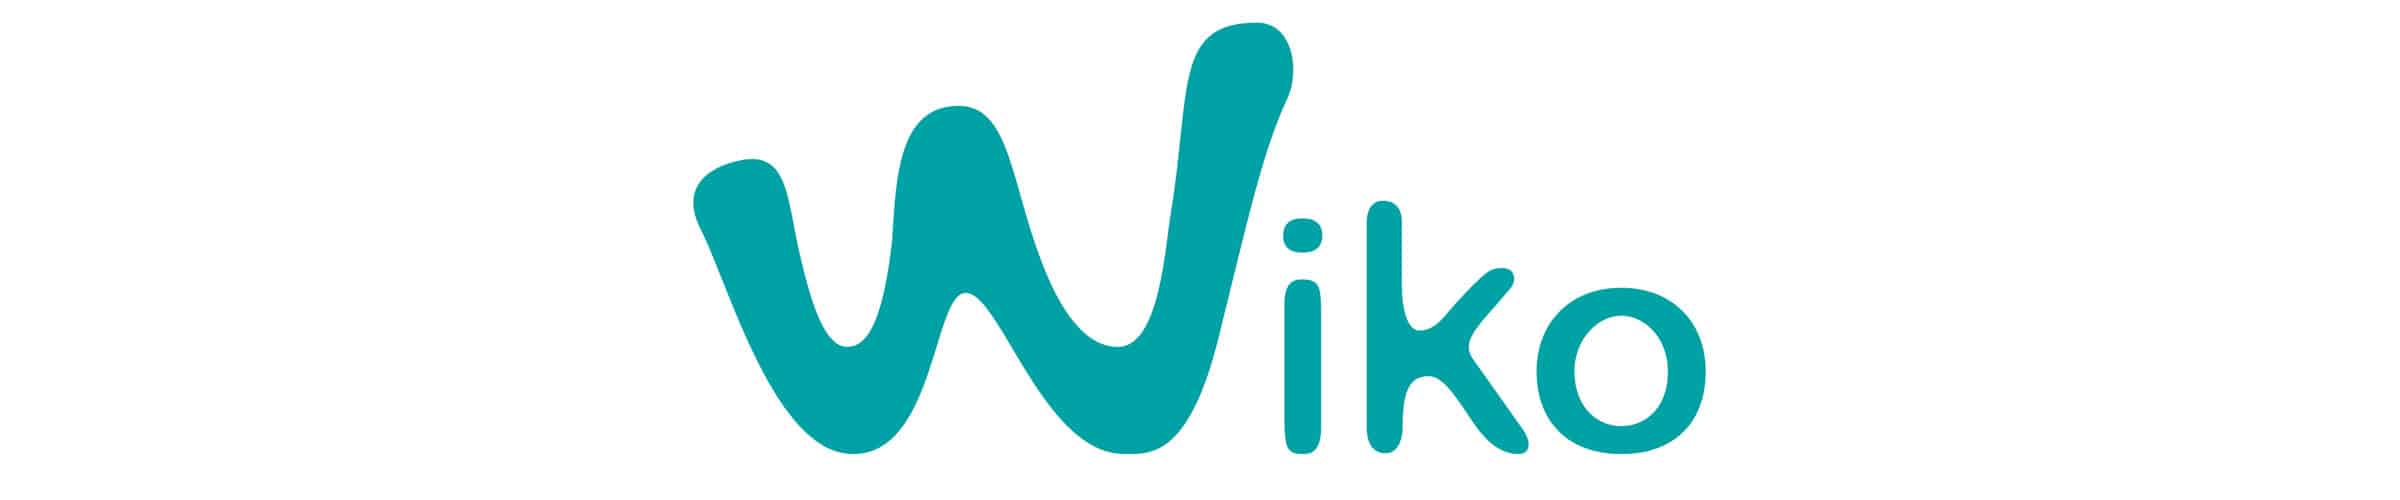 Wiko & #WikoBlogFest und Wer ist das überhaupt